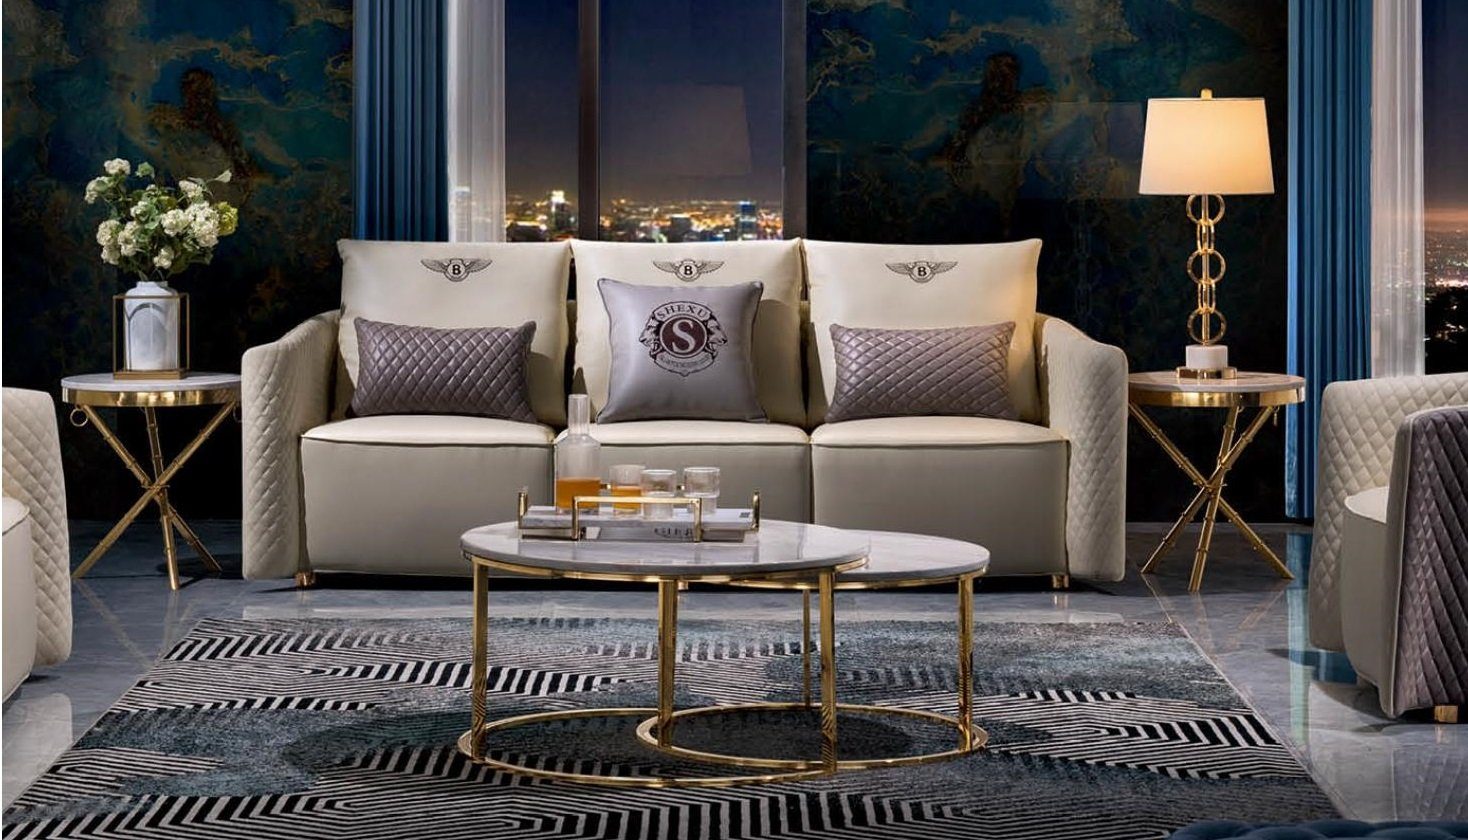 in Europe Leder JVmoebel Sofa Design Set Relax, Polster Sofas Made Sofagarnitur Couchen